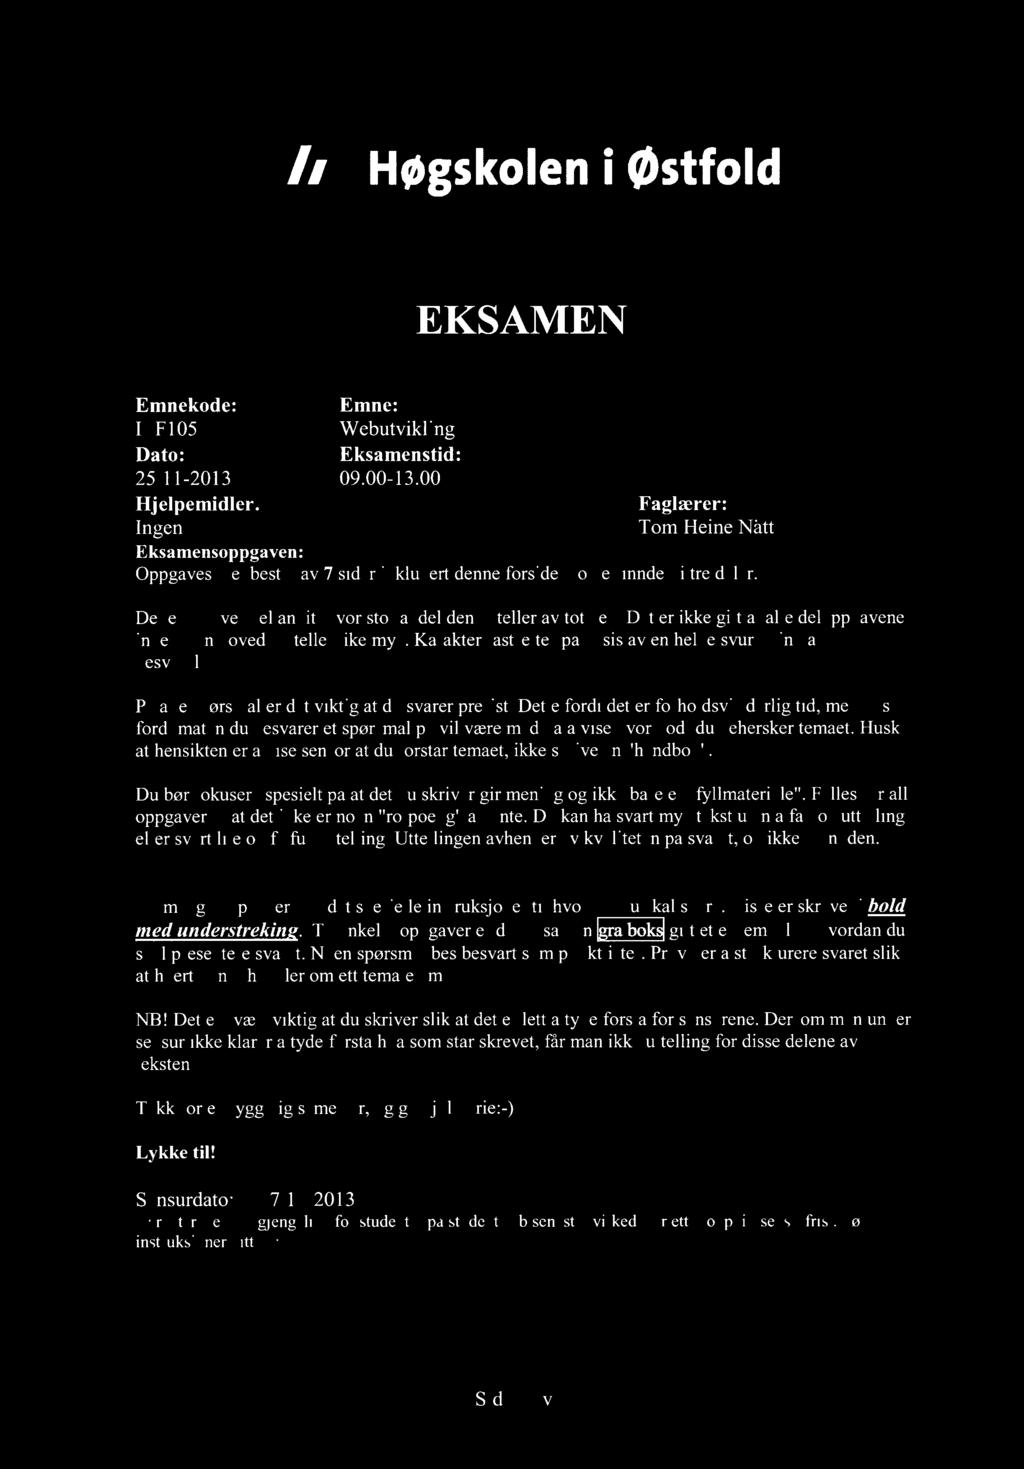 Høgskoleni østfold EKSAMEN Emnekode: Emne: ITF10511 Webutvikling Dato: Eksamenstid: 25/11-2013 09.00-13.